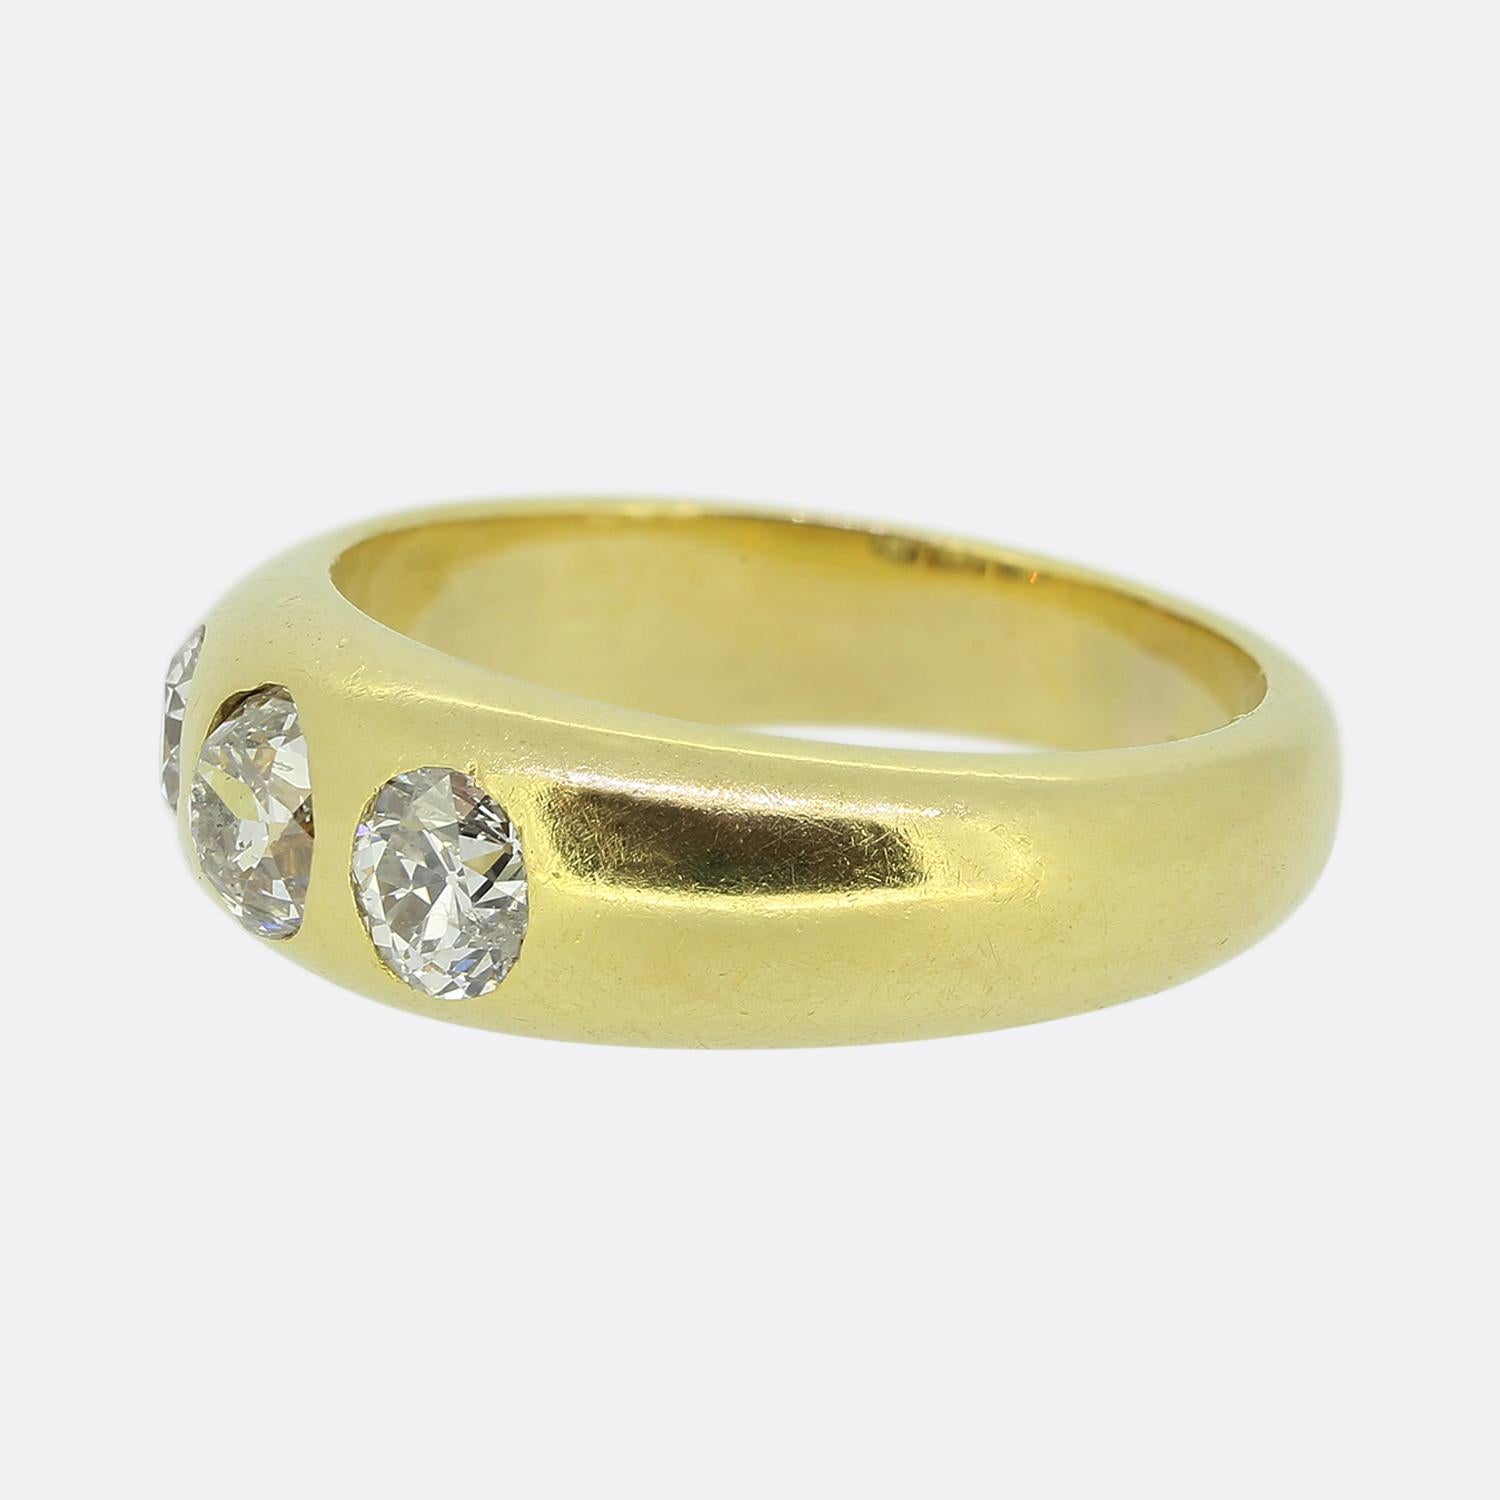 Hier haben wir einen klassisch gestalteten Diamantring mit drei Steinen. Dieses antike Stück wurde aus warmem 18-karätigem Gelbgold gefertigt und verfügt über drei runde, facettierte Diamanten im Altschliff, von denen der größte in der Mitte sitzt.